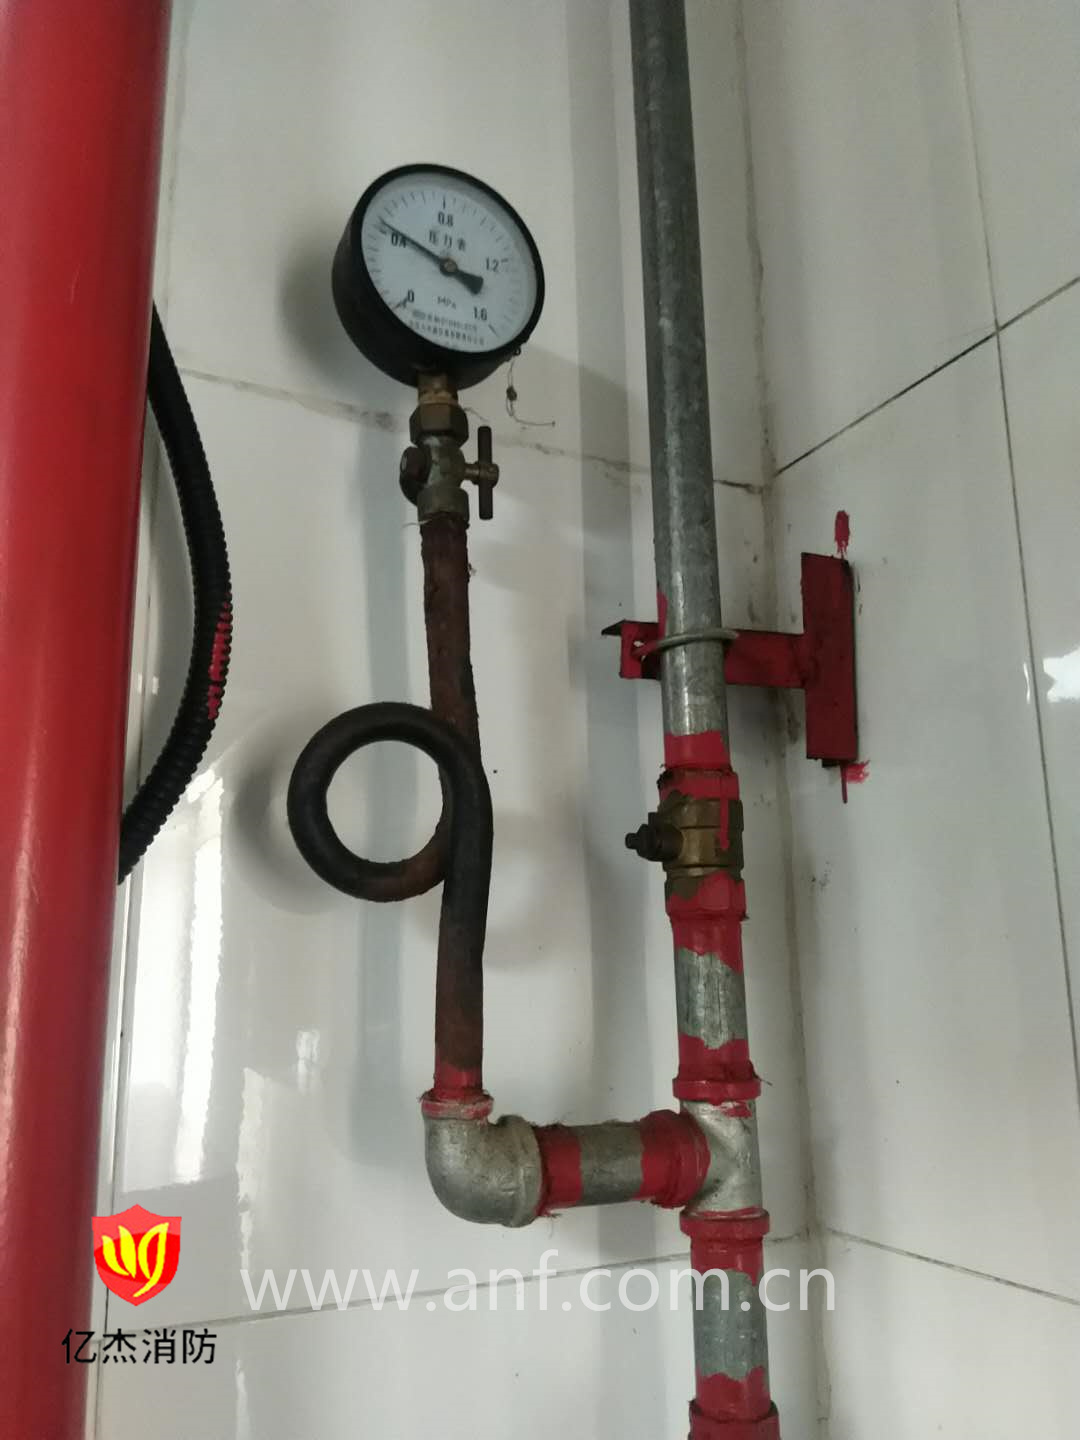 消防泵故障问题